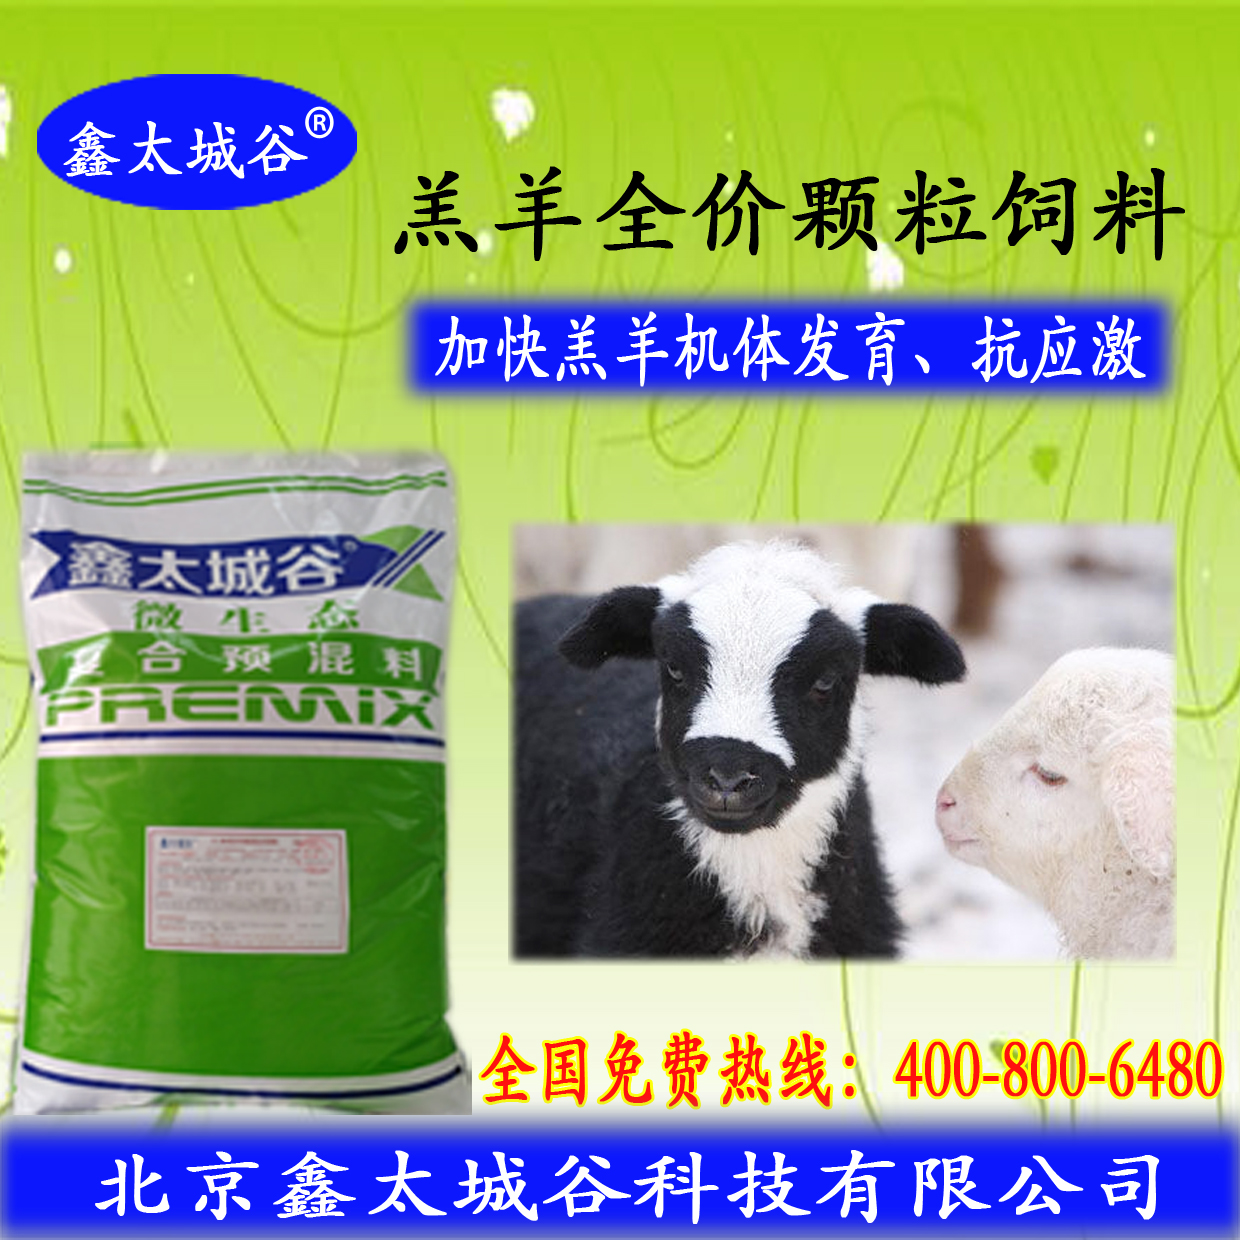 北京鑫太城谷微生态型适口性好的羔羊颗粒料